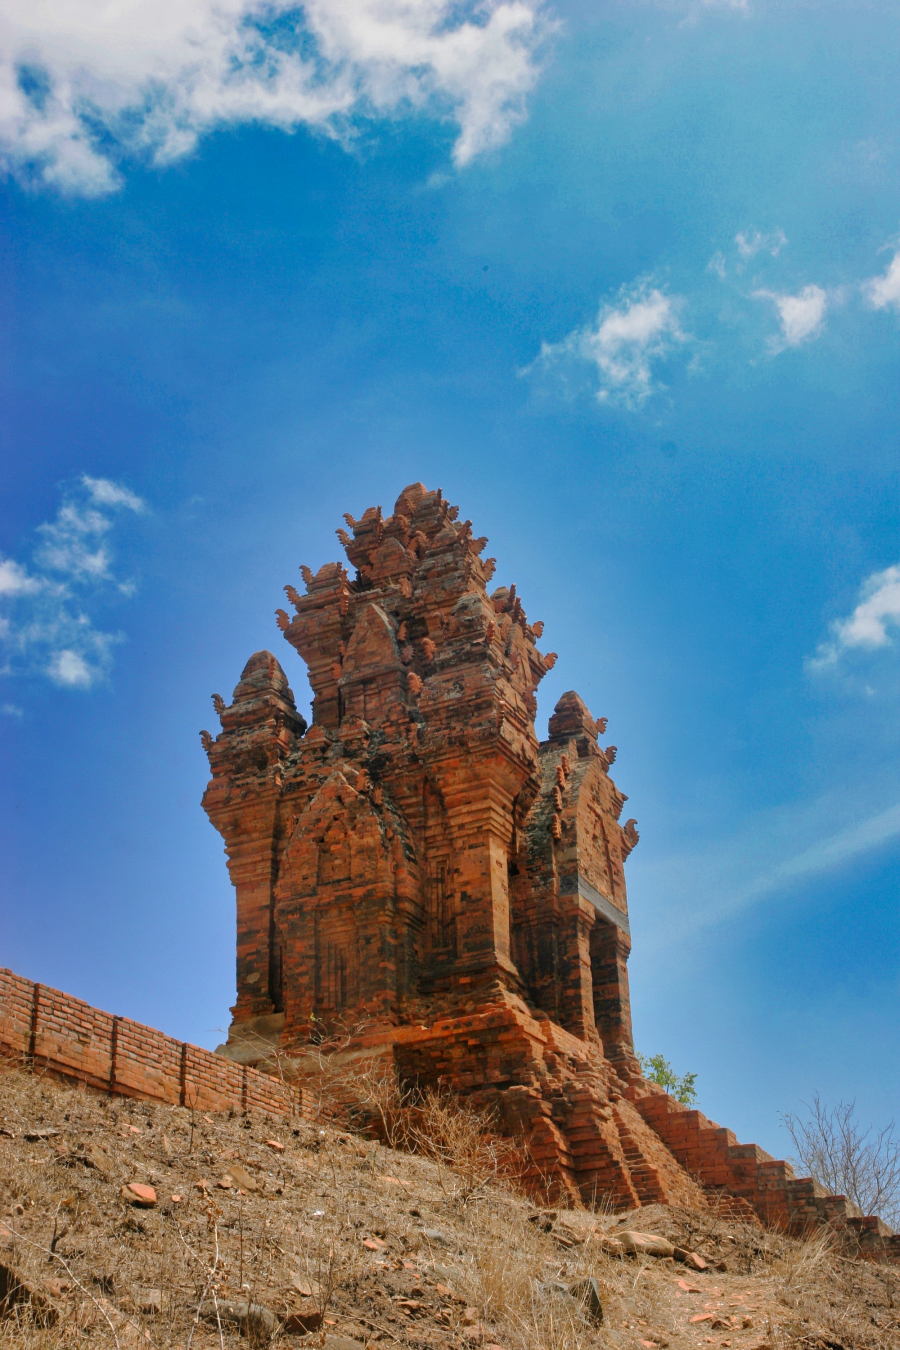 Khám phá Po Klaung Garai - cụm tháp Chăm đặc biệt ở Ninh Thuận - 10